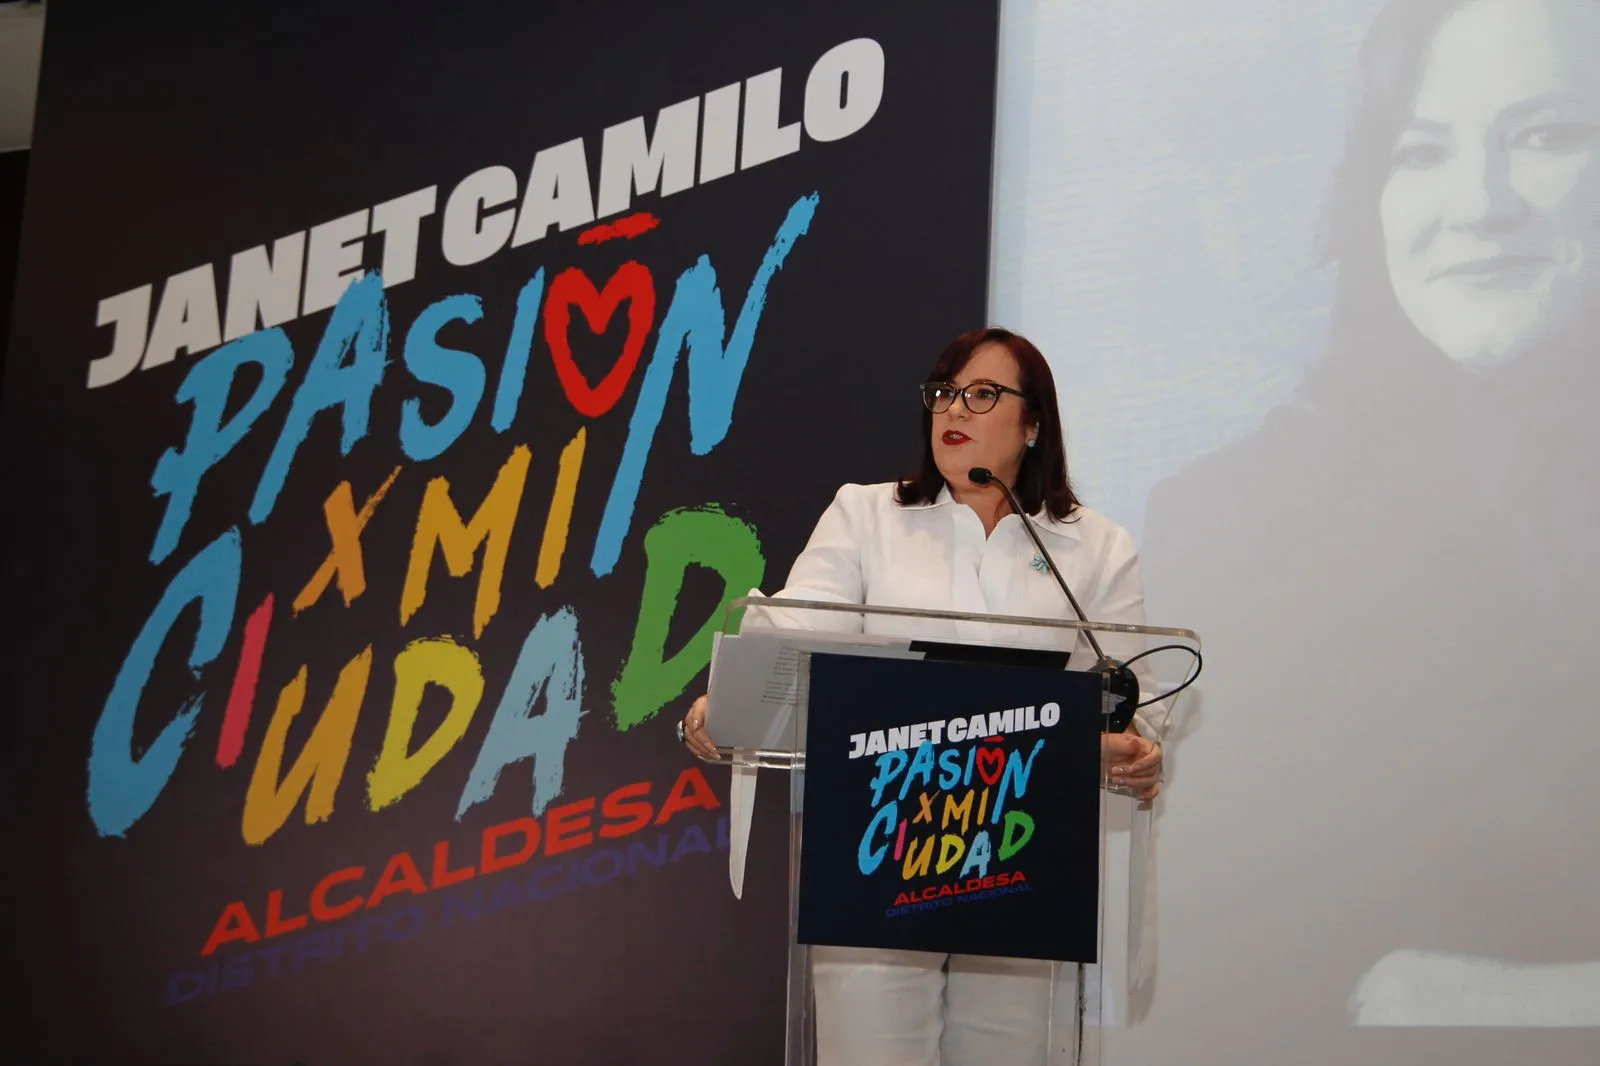 Janet Camilo del PRD anuncia aspira a suceder a Carolina Mejía en la ADN